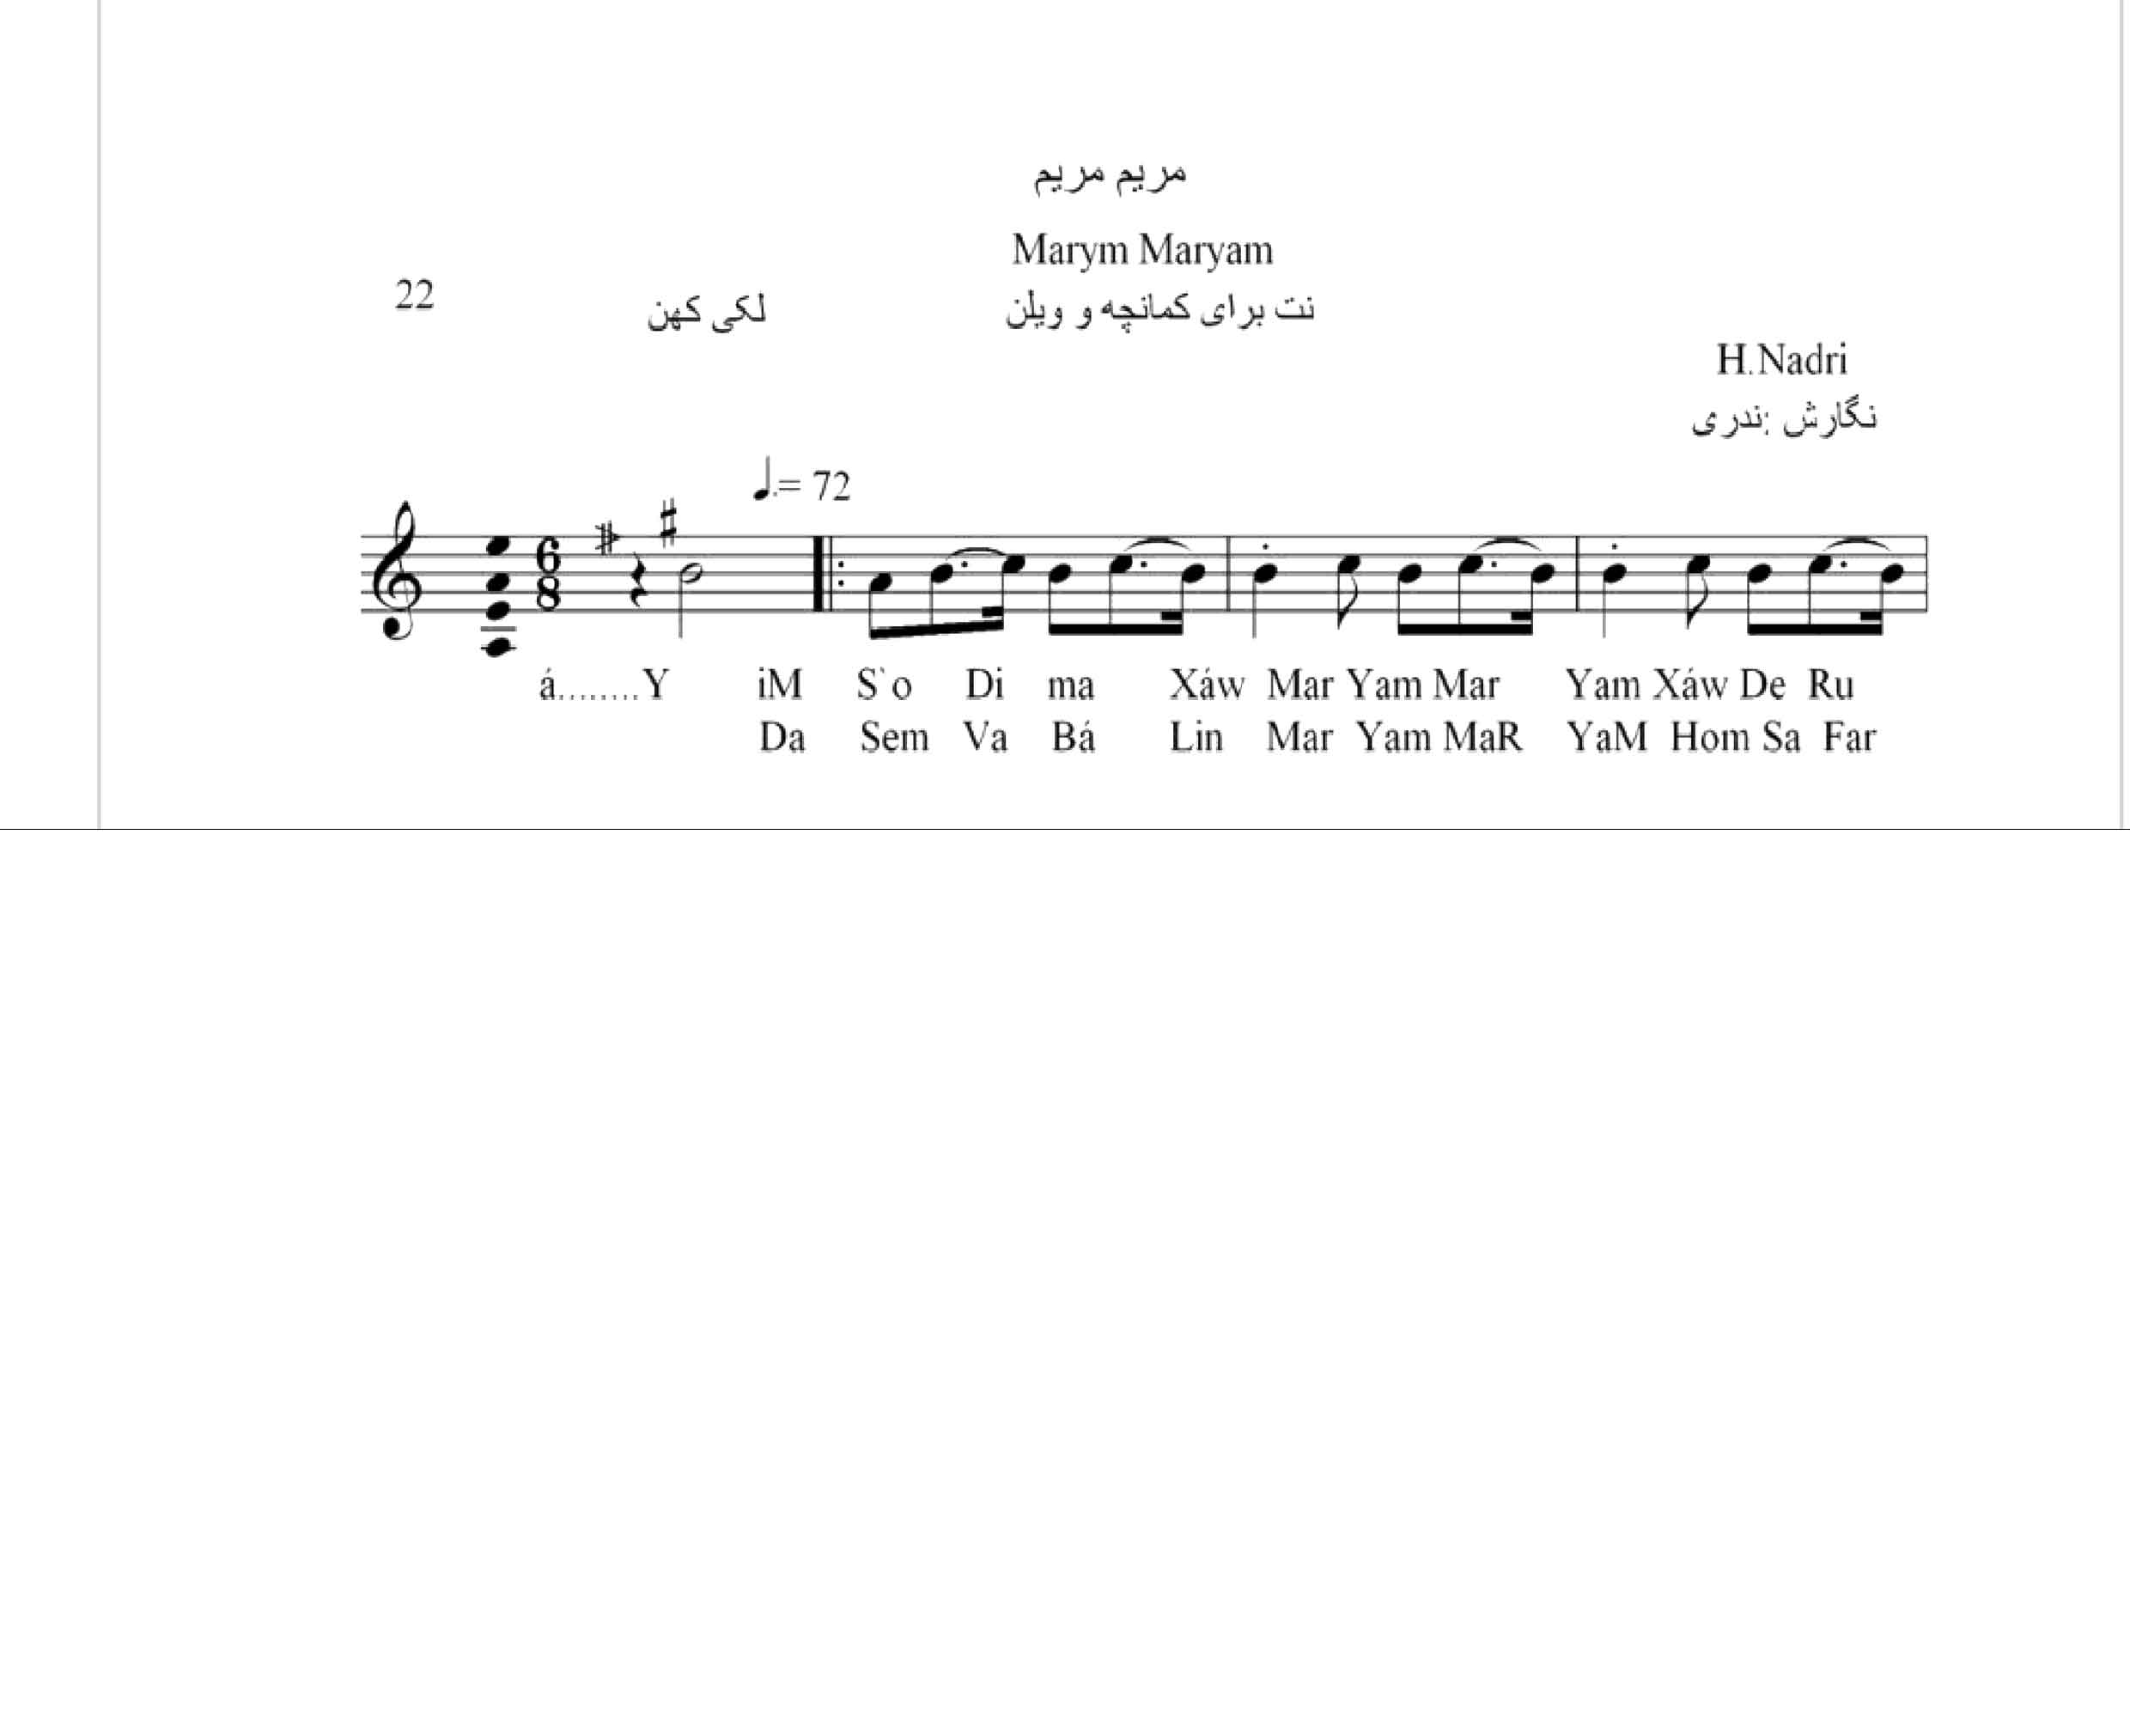 نت آهنگ مریم مریم محلی لری حجت اله ندری قابل اجرا با کمانچه و دیگر سازها